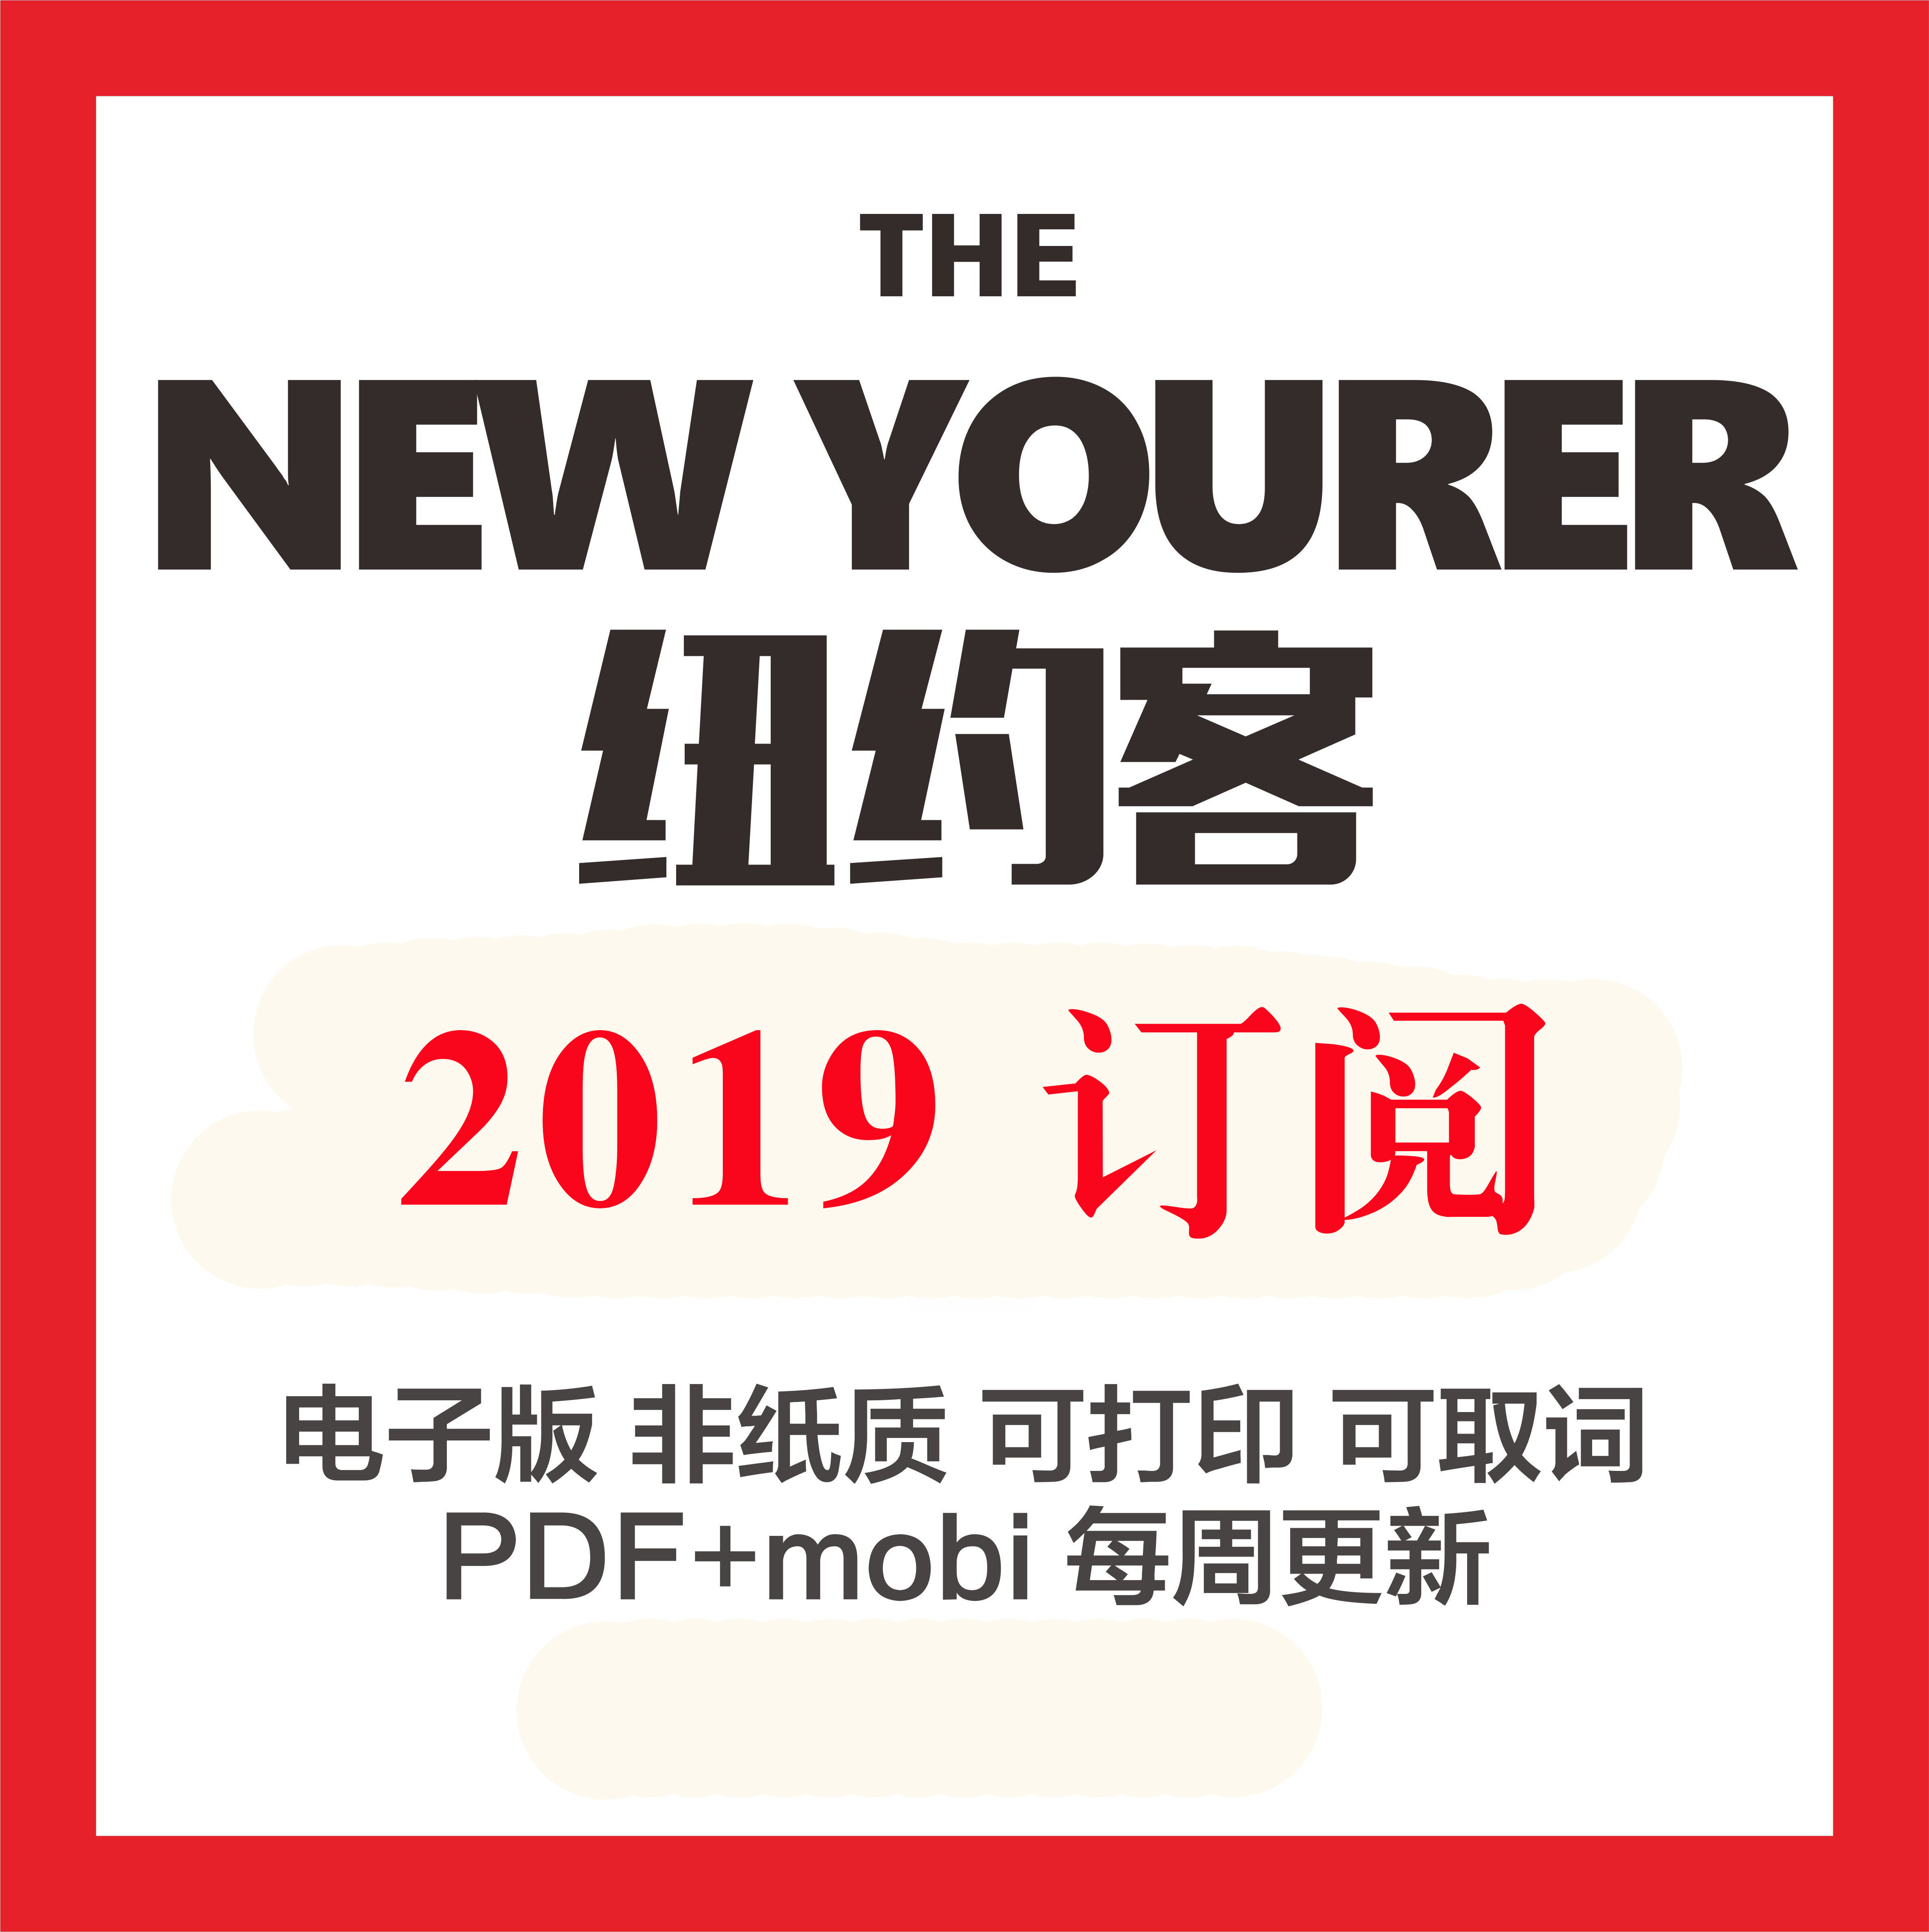 纽约客 The New Yorker 2019全年订阅合集